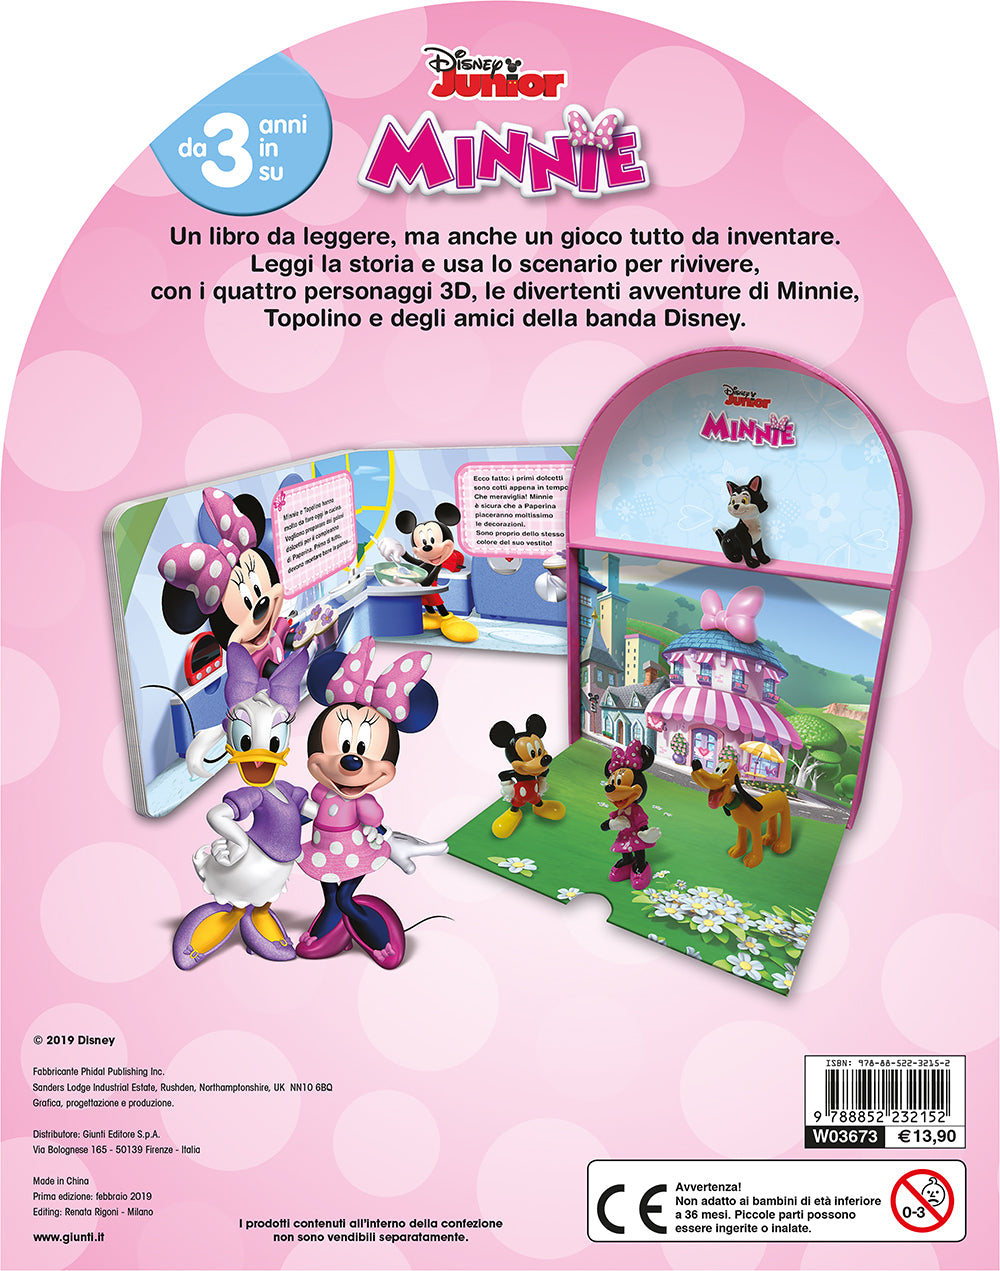 Minnie - LibroGiocaKit::Con 4 personaggi 3D e 1 scenario per giocare!